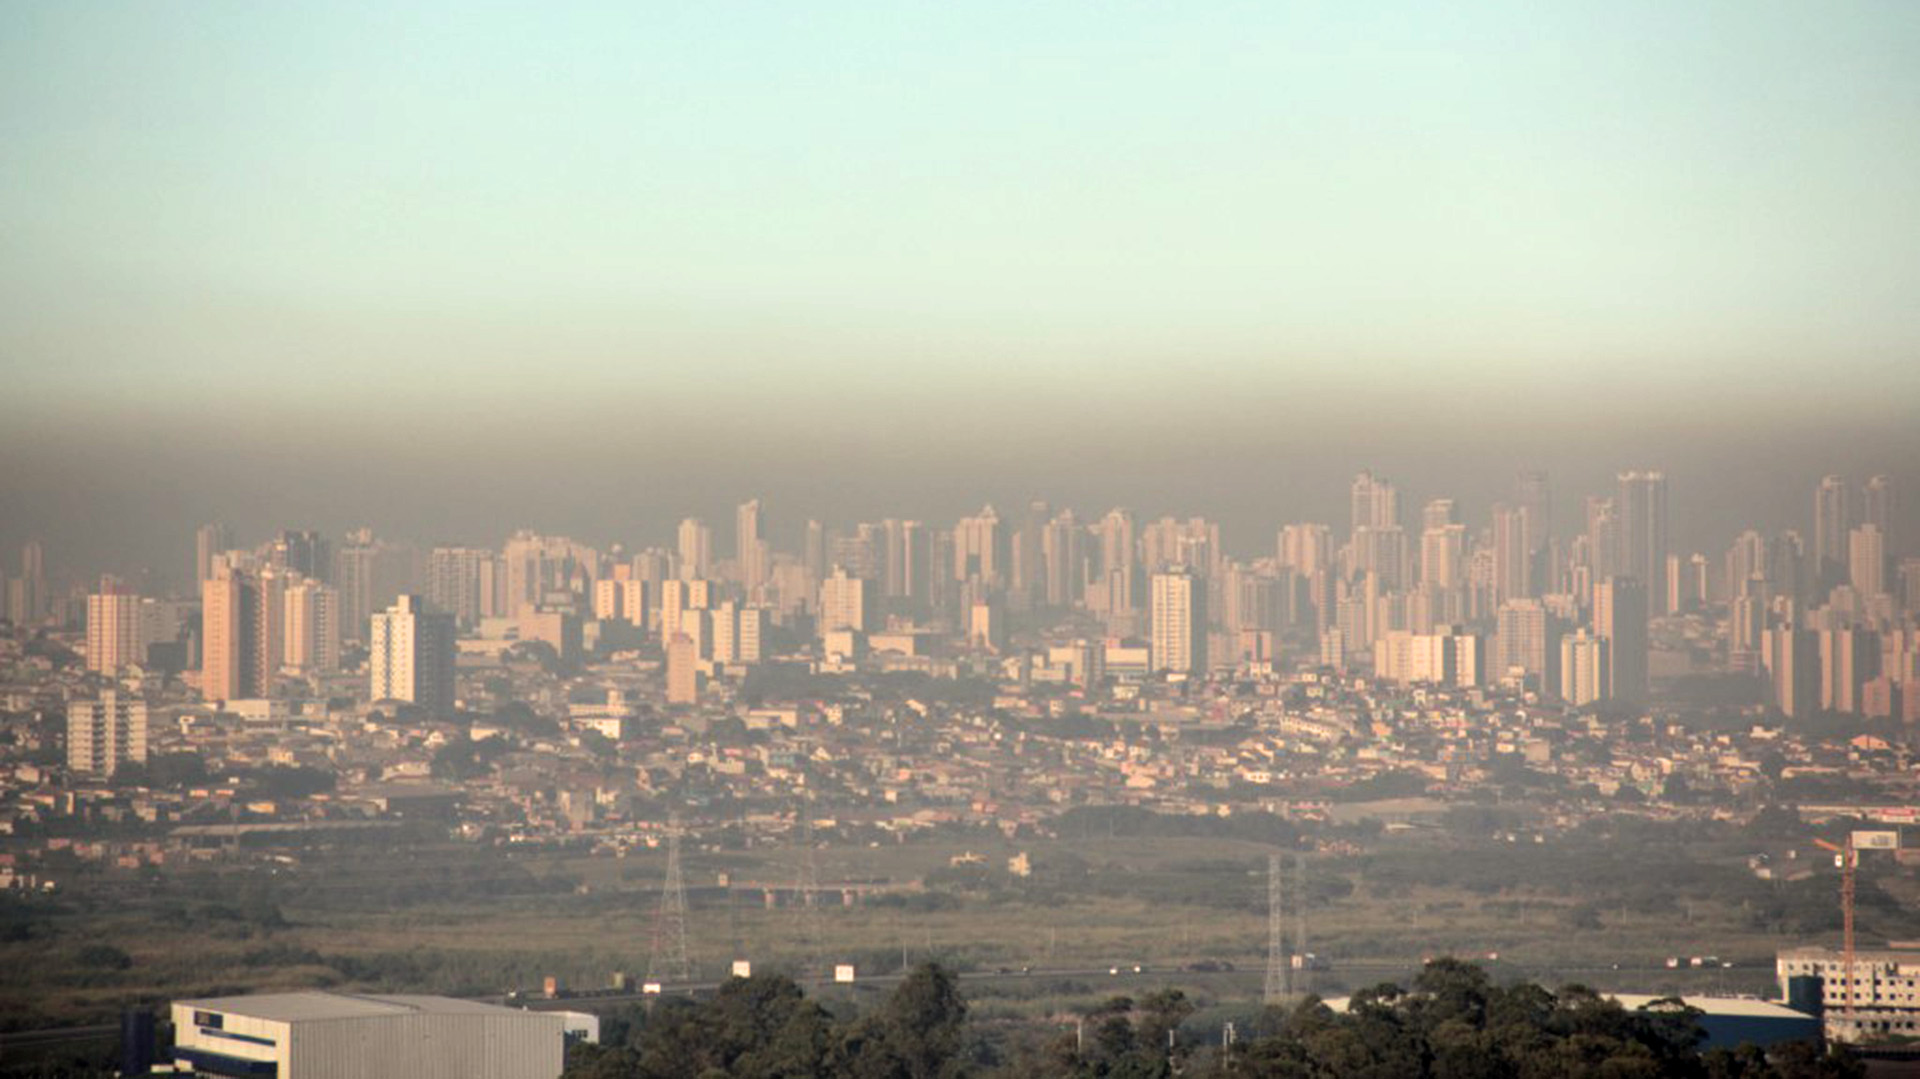 El NOx es el causante de las famosas nubes de smog. Esto es lo que ha inclinado la balanza en contra de los e-fuels como alternativa para los motores de combustión interna